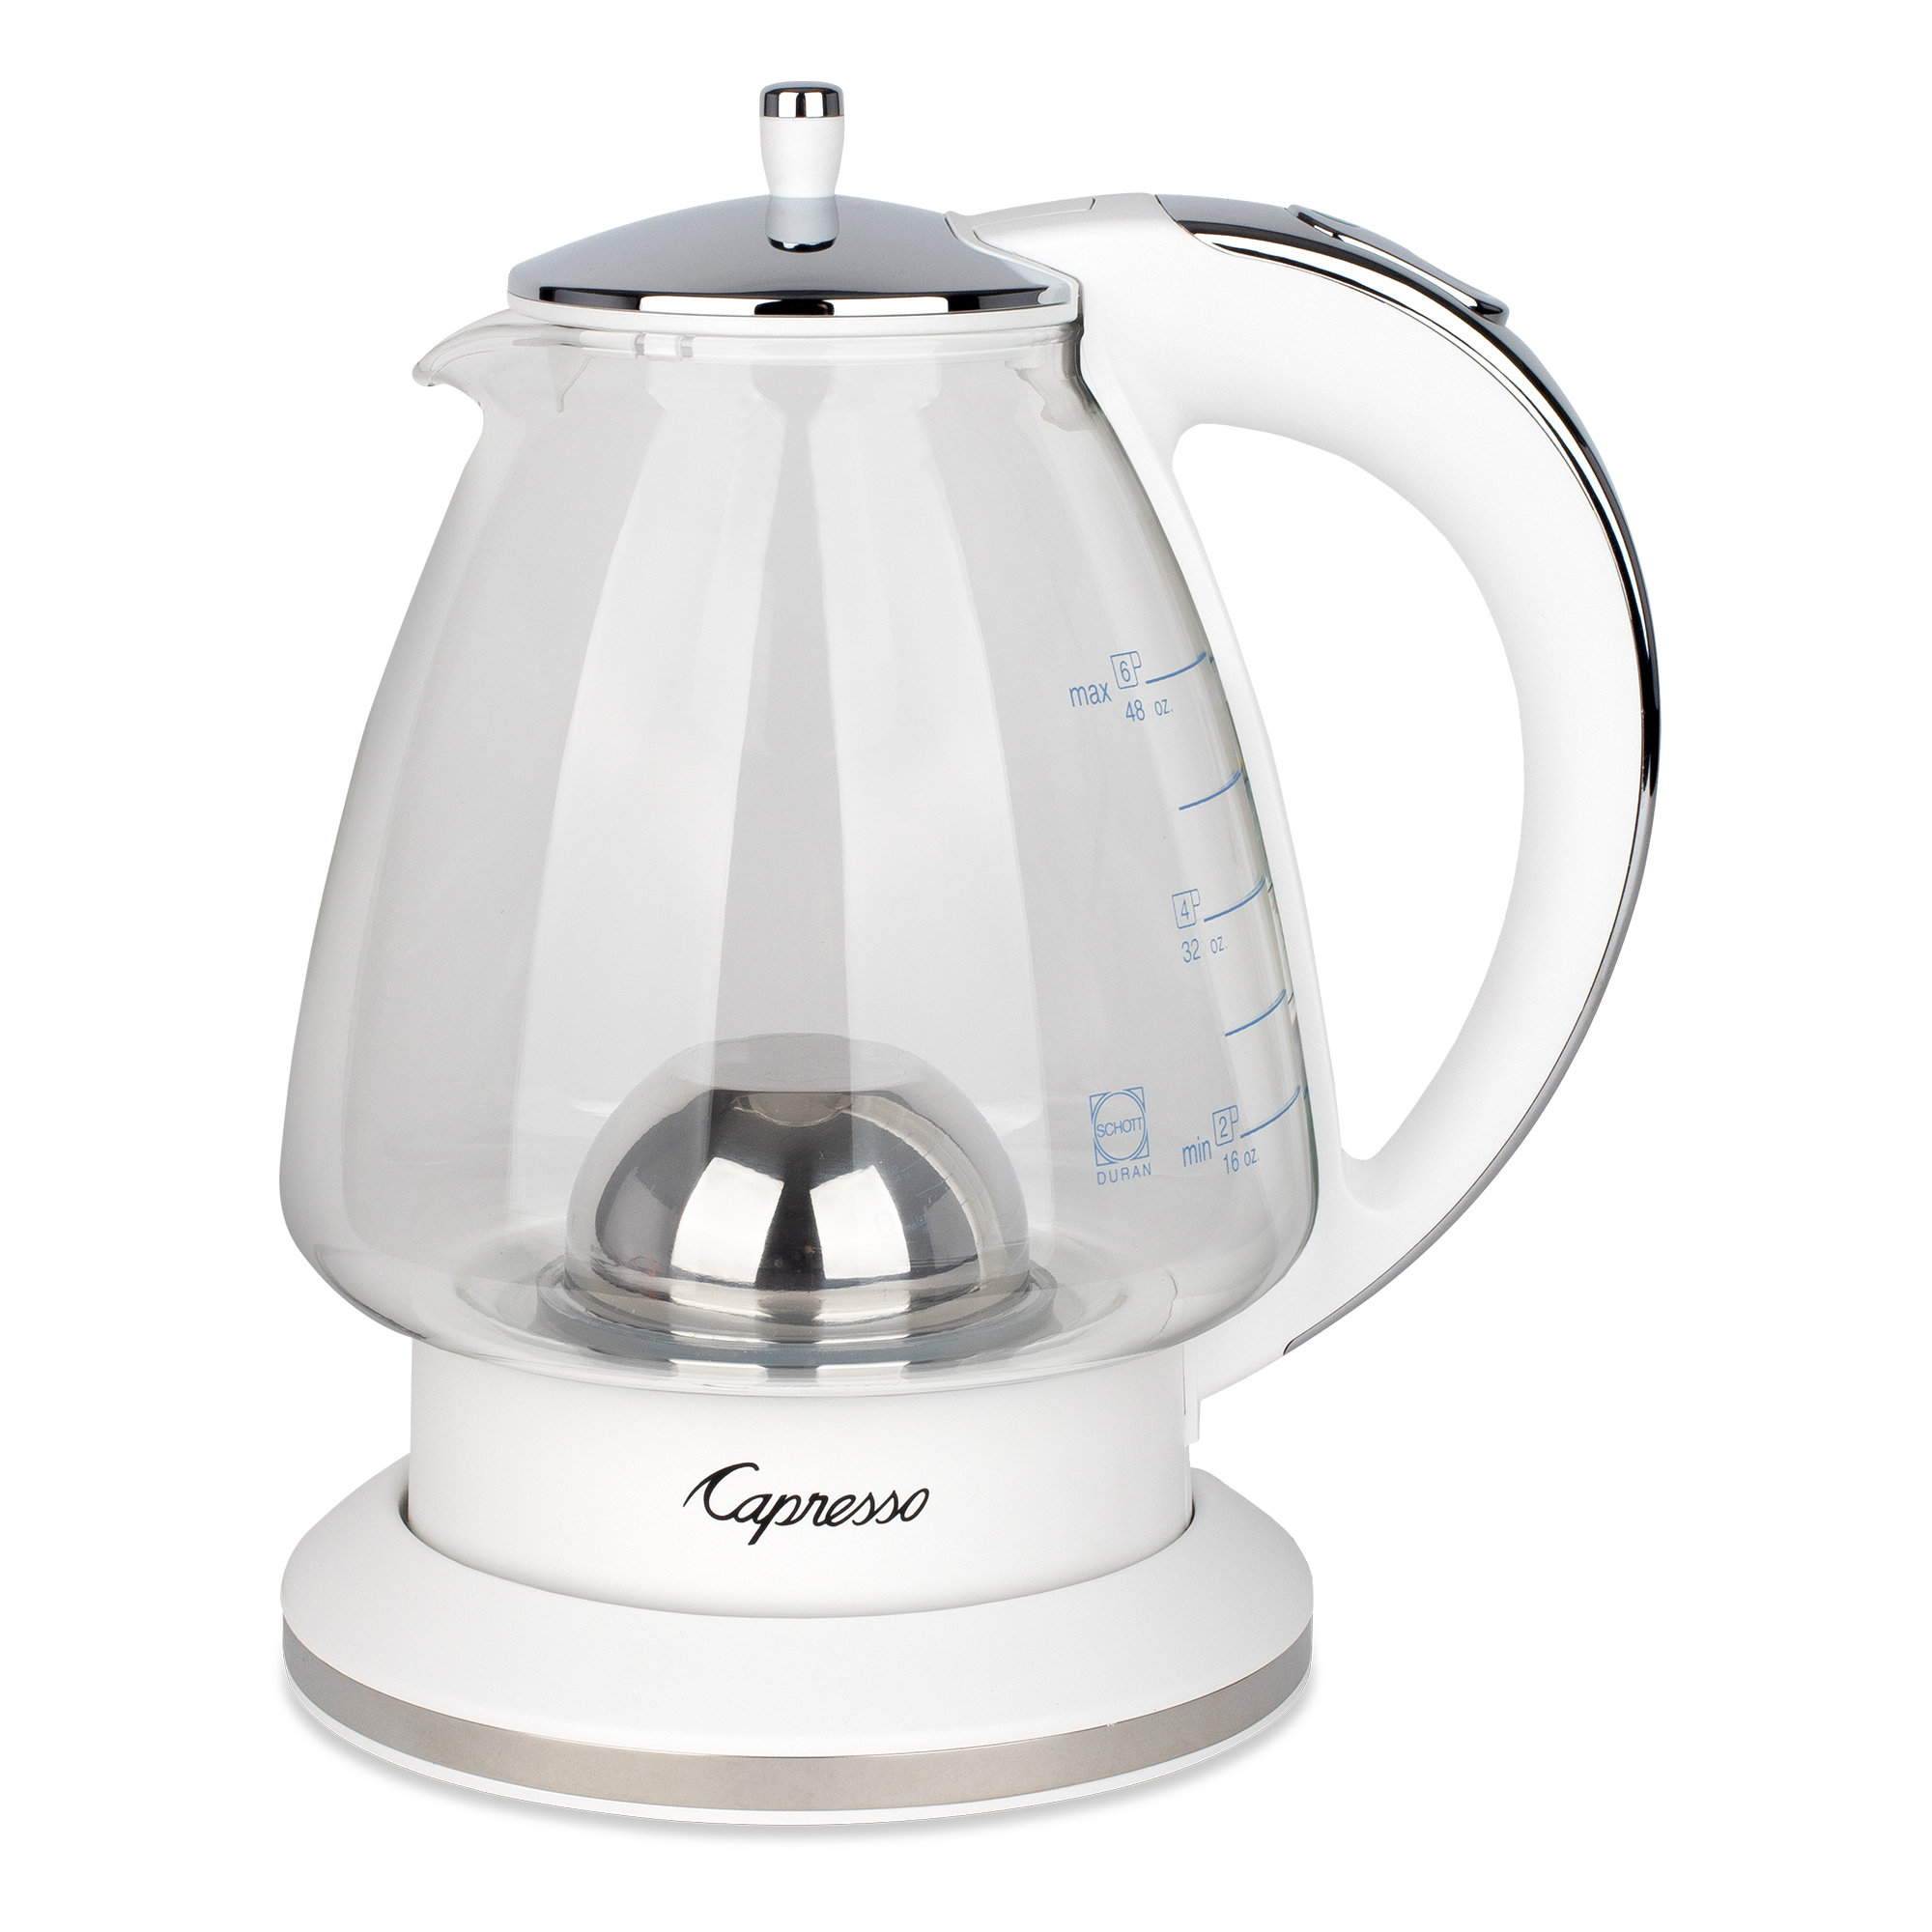 https://assets.wfcdn.com/im/84350617/compr-r85/2328/232806587/capresso-h2o-rapid-boil-glass-tea-kettle.jpg